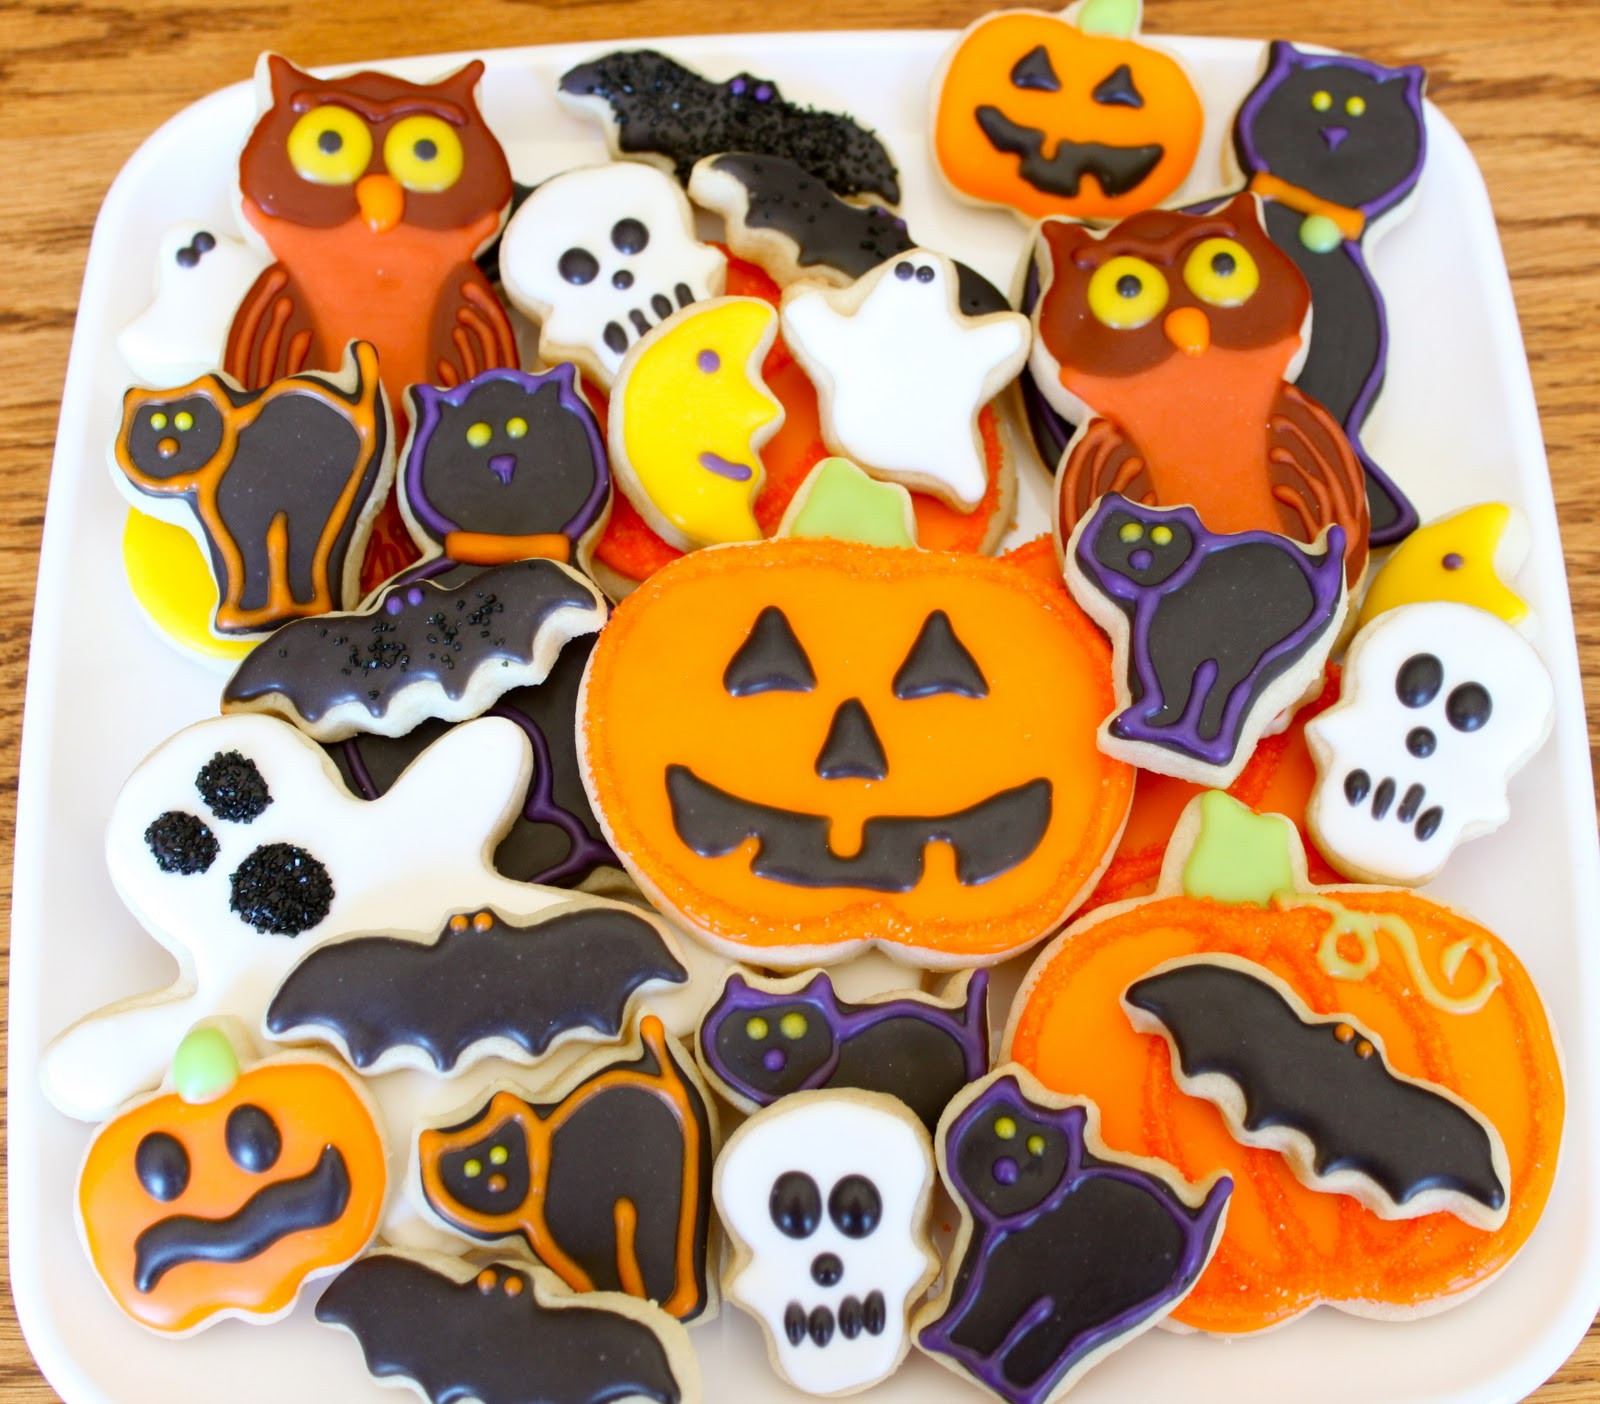 Decorating Halloween Cookies
 Teresa s Treat Shop Halloween Time